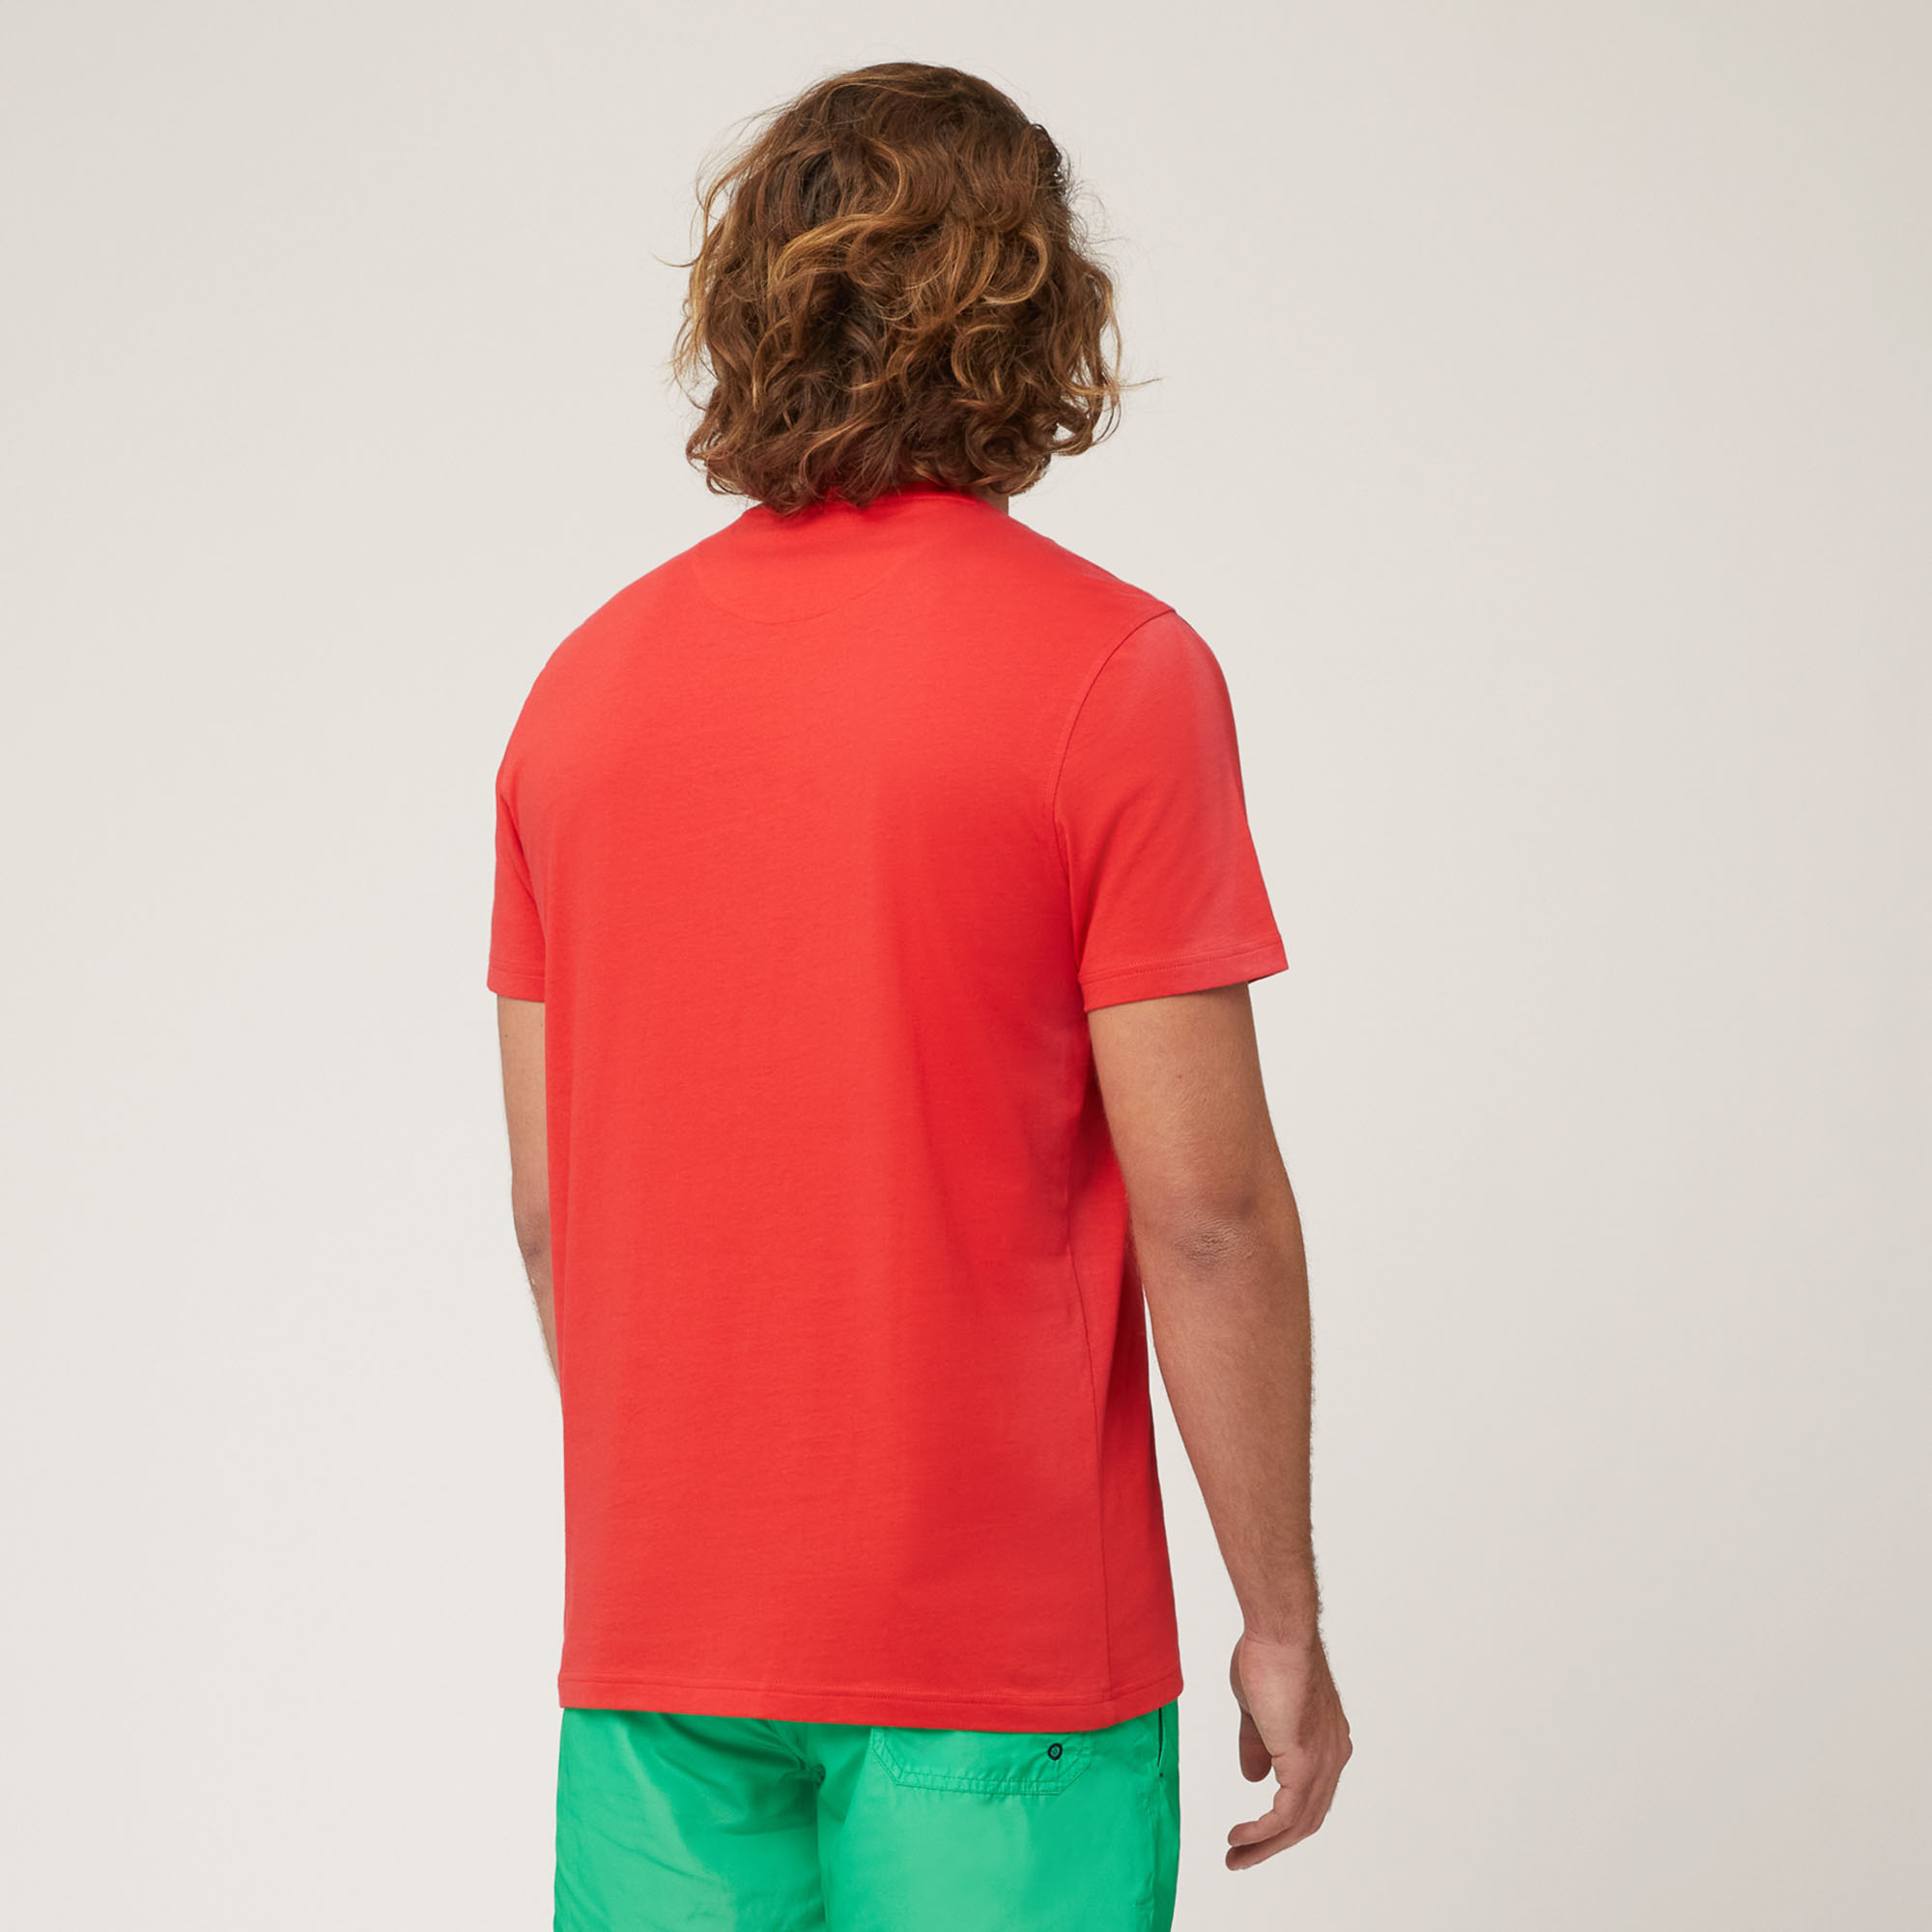 Amalfi Coast T-Shirt, Light Red, large image number 1